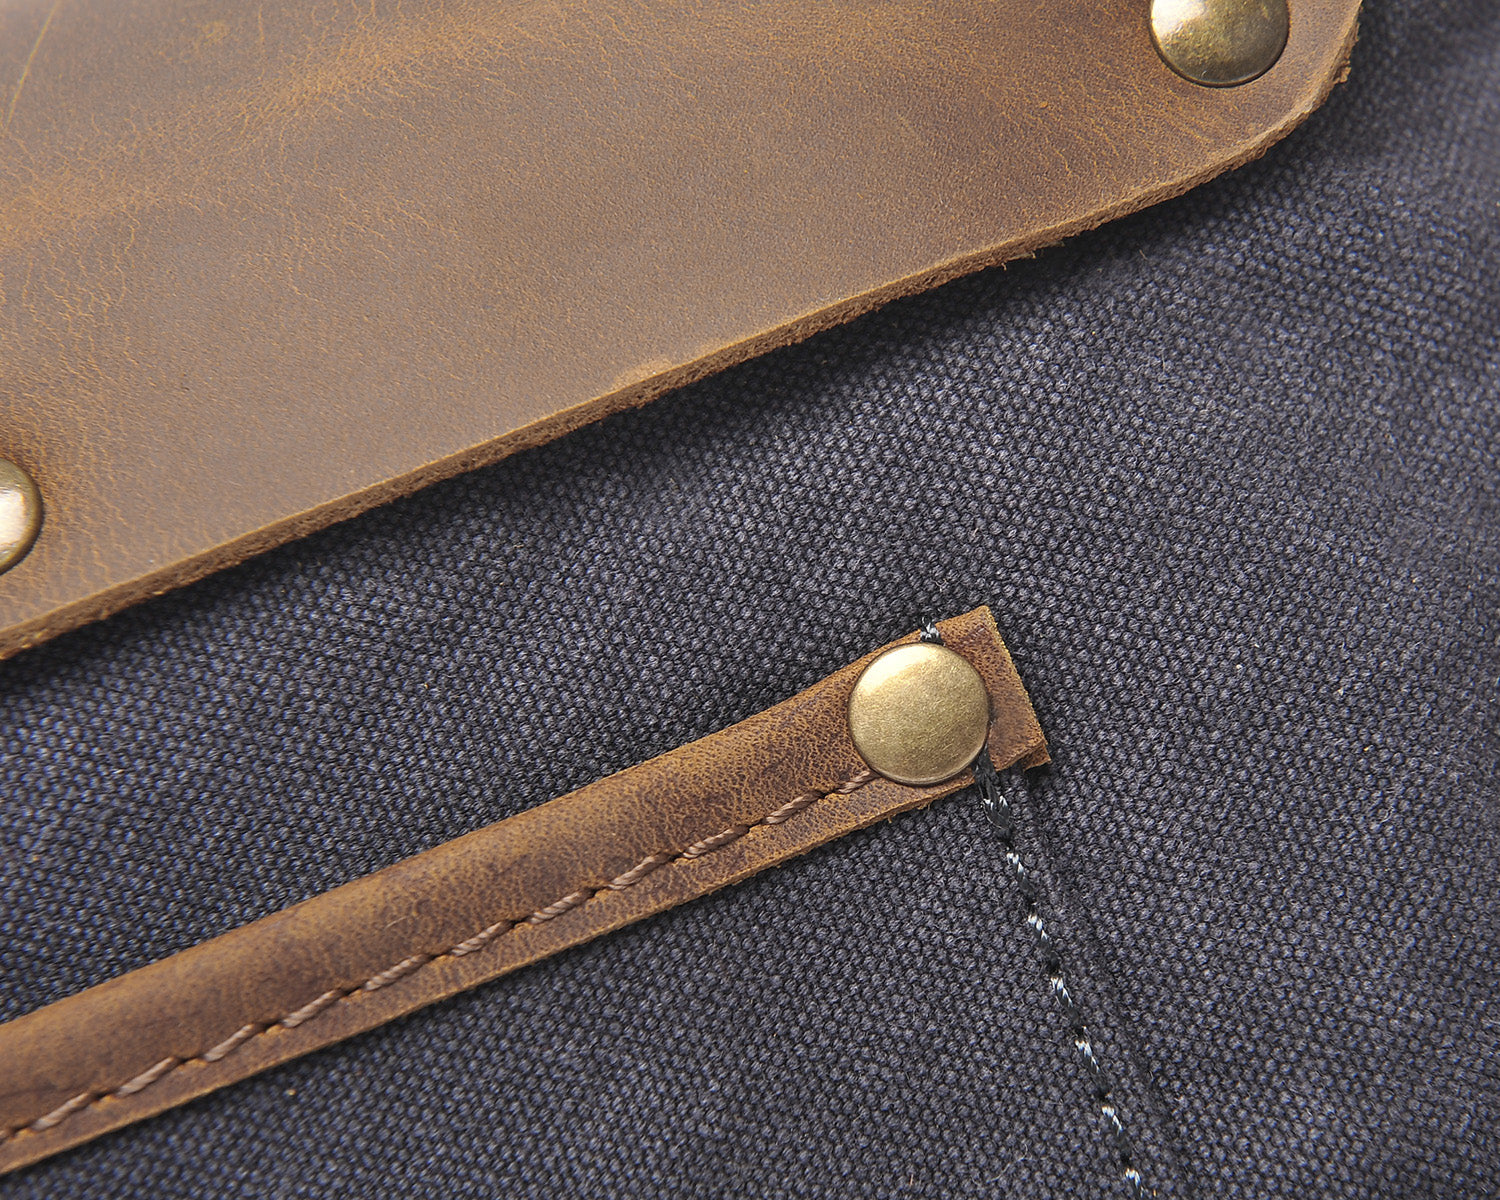 DapperG Modern Twist Leather Shoulder Bag